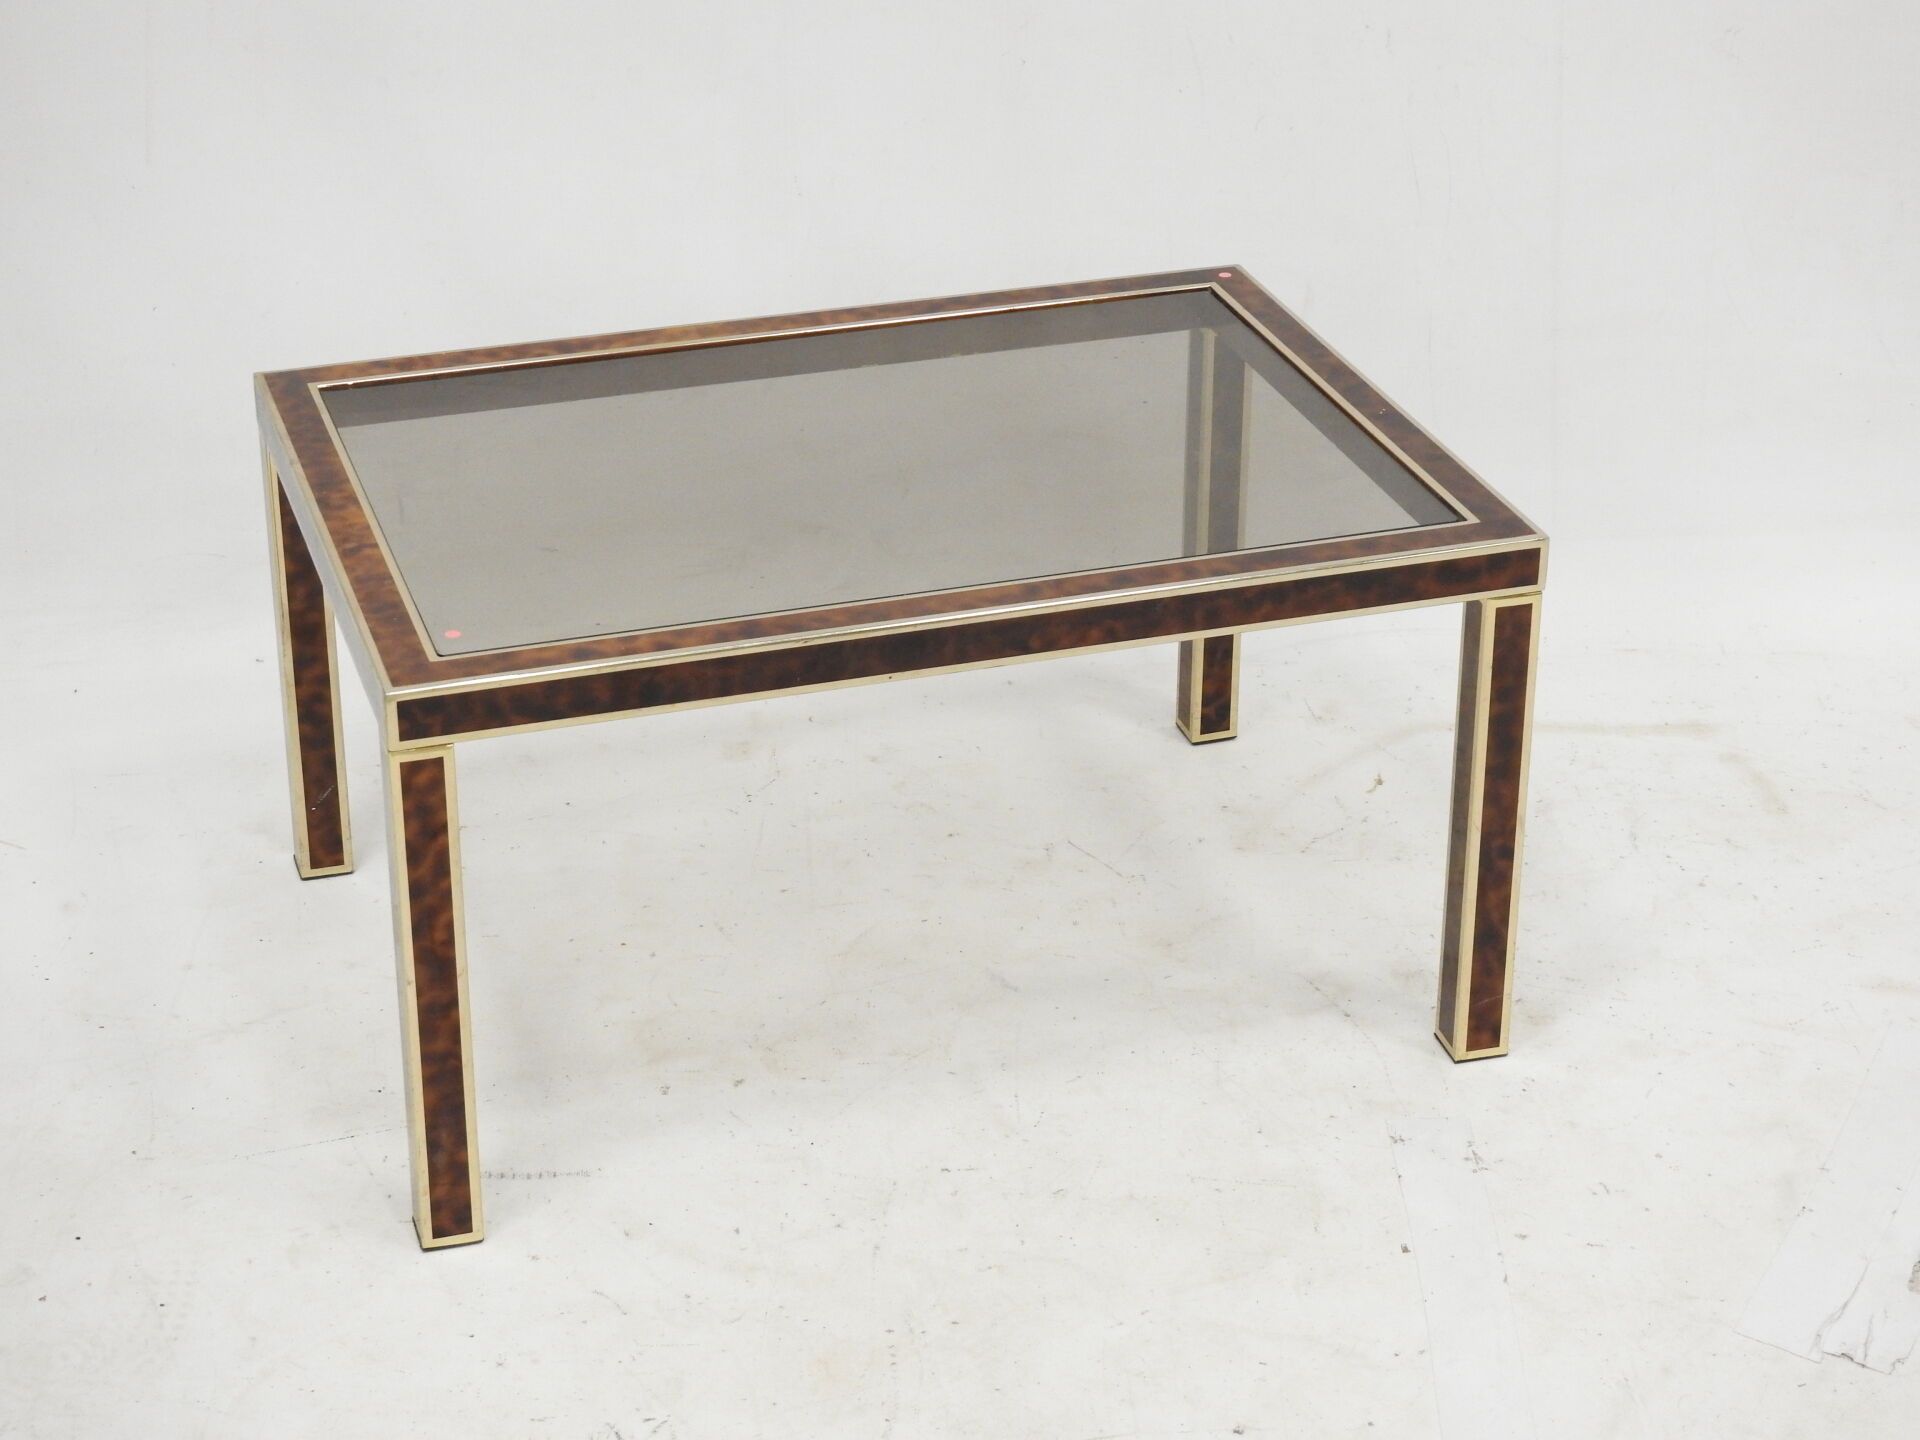 Null 龟甲漆金属长方形矮桌。约1970年。35.5 x 67 x 47厘米。有些磨损